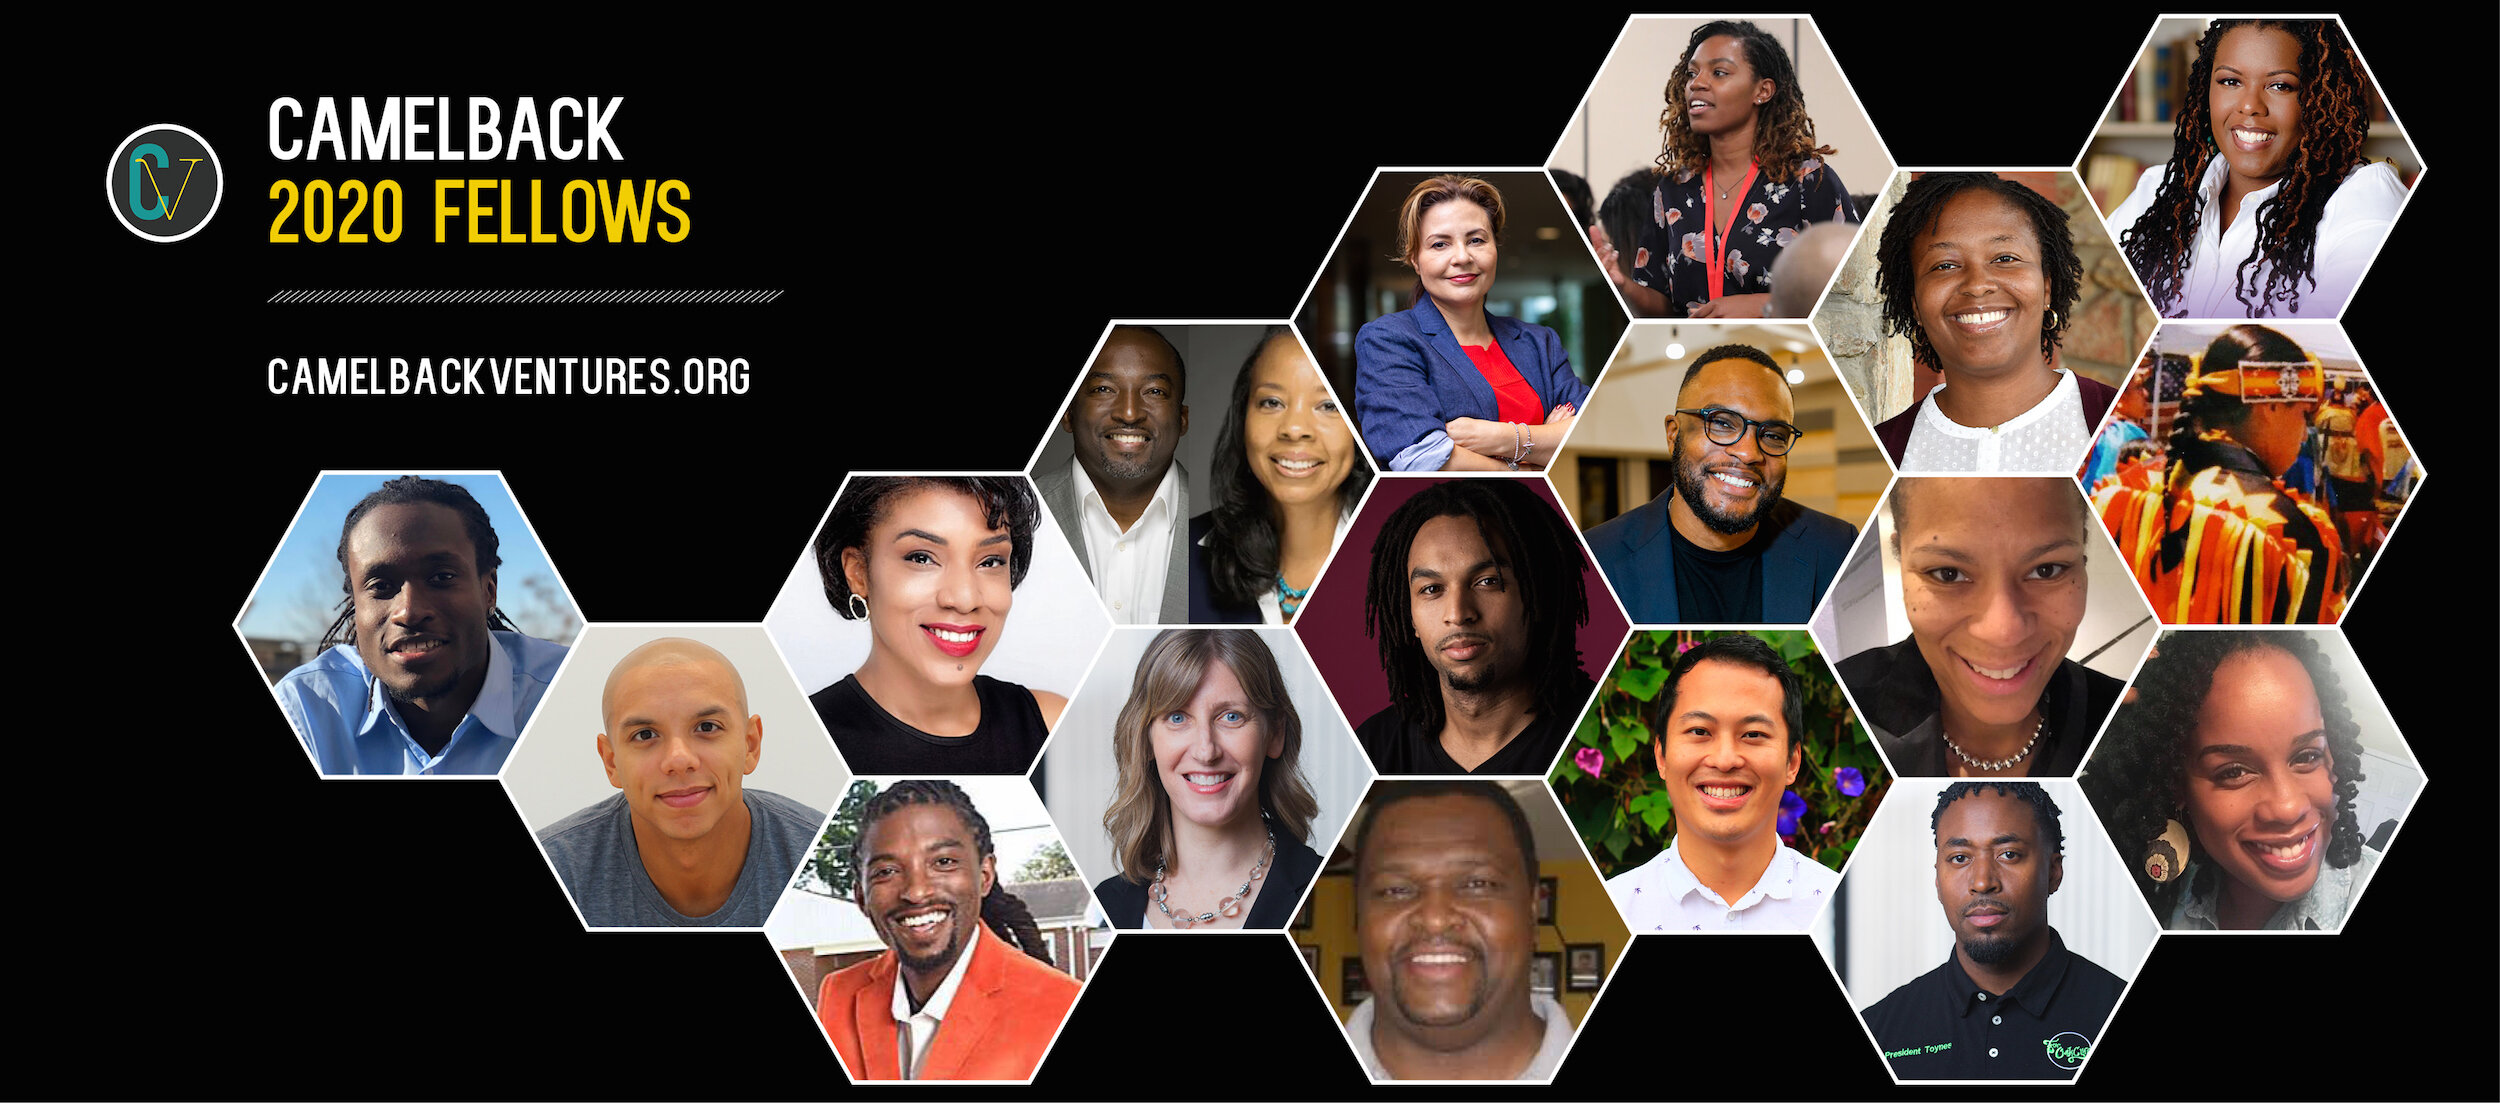 Group photo of Camelback 2020 Fellows featuring diverse entrepreneurs.